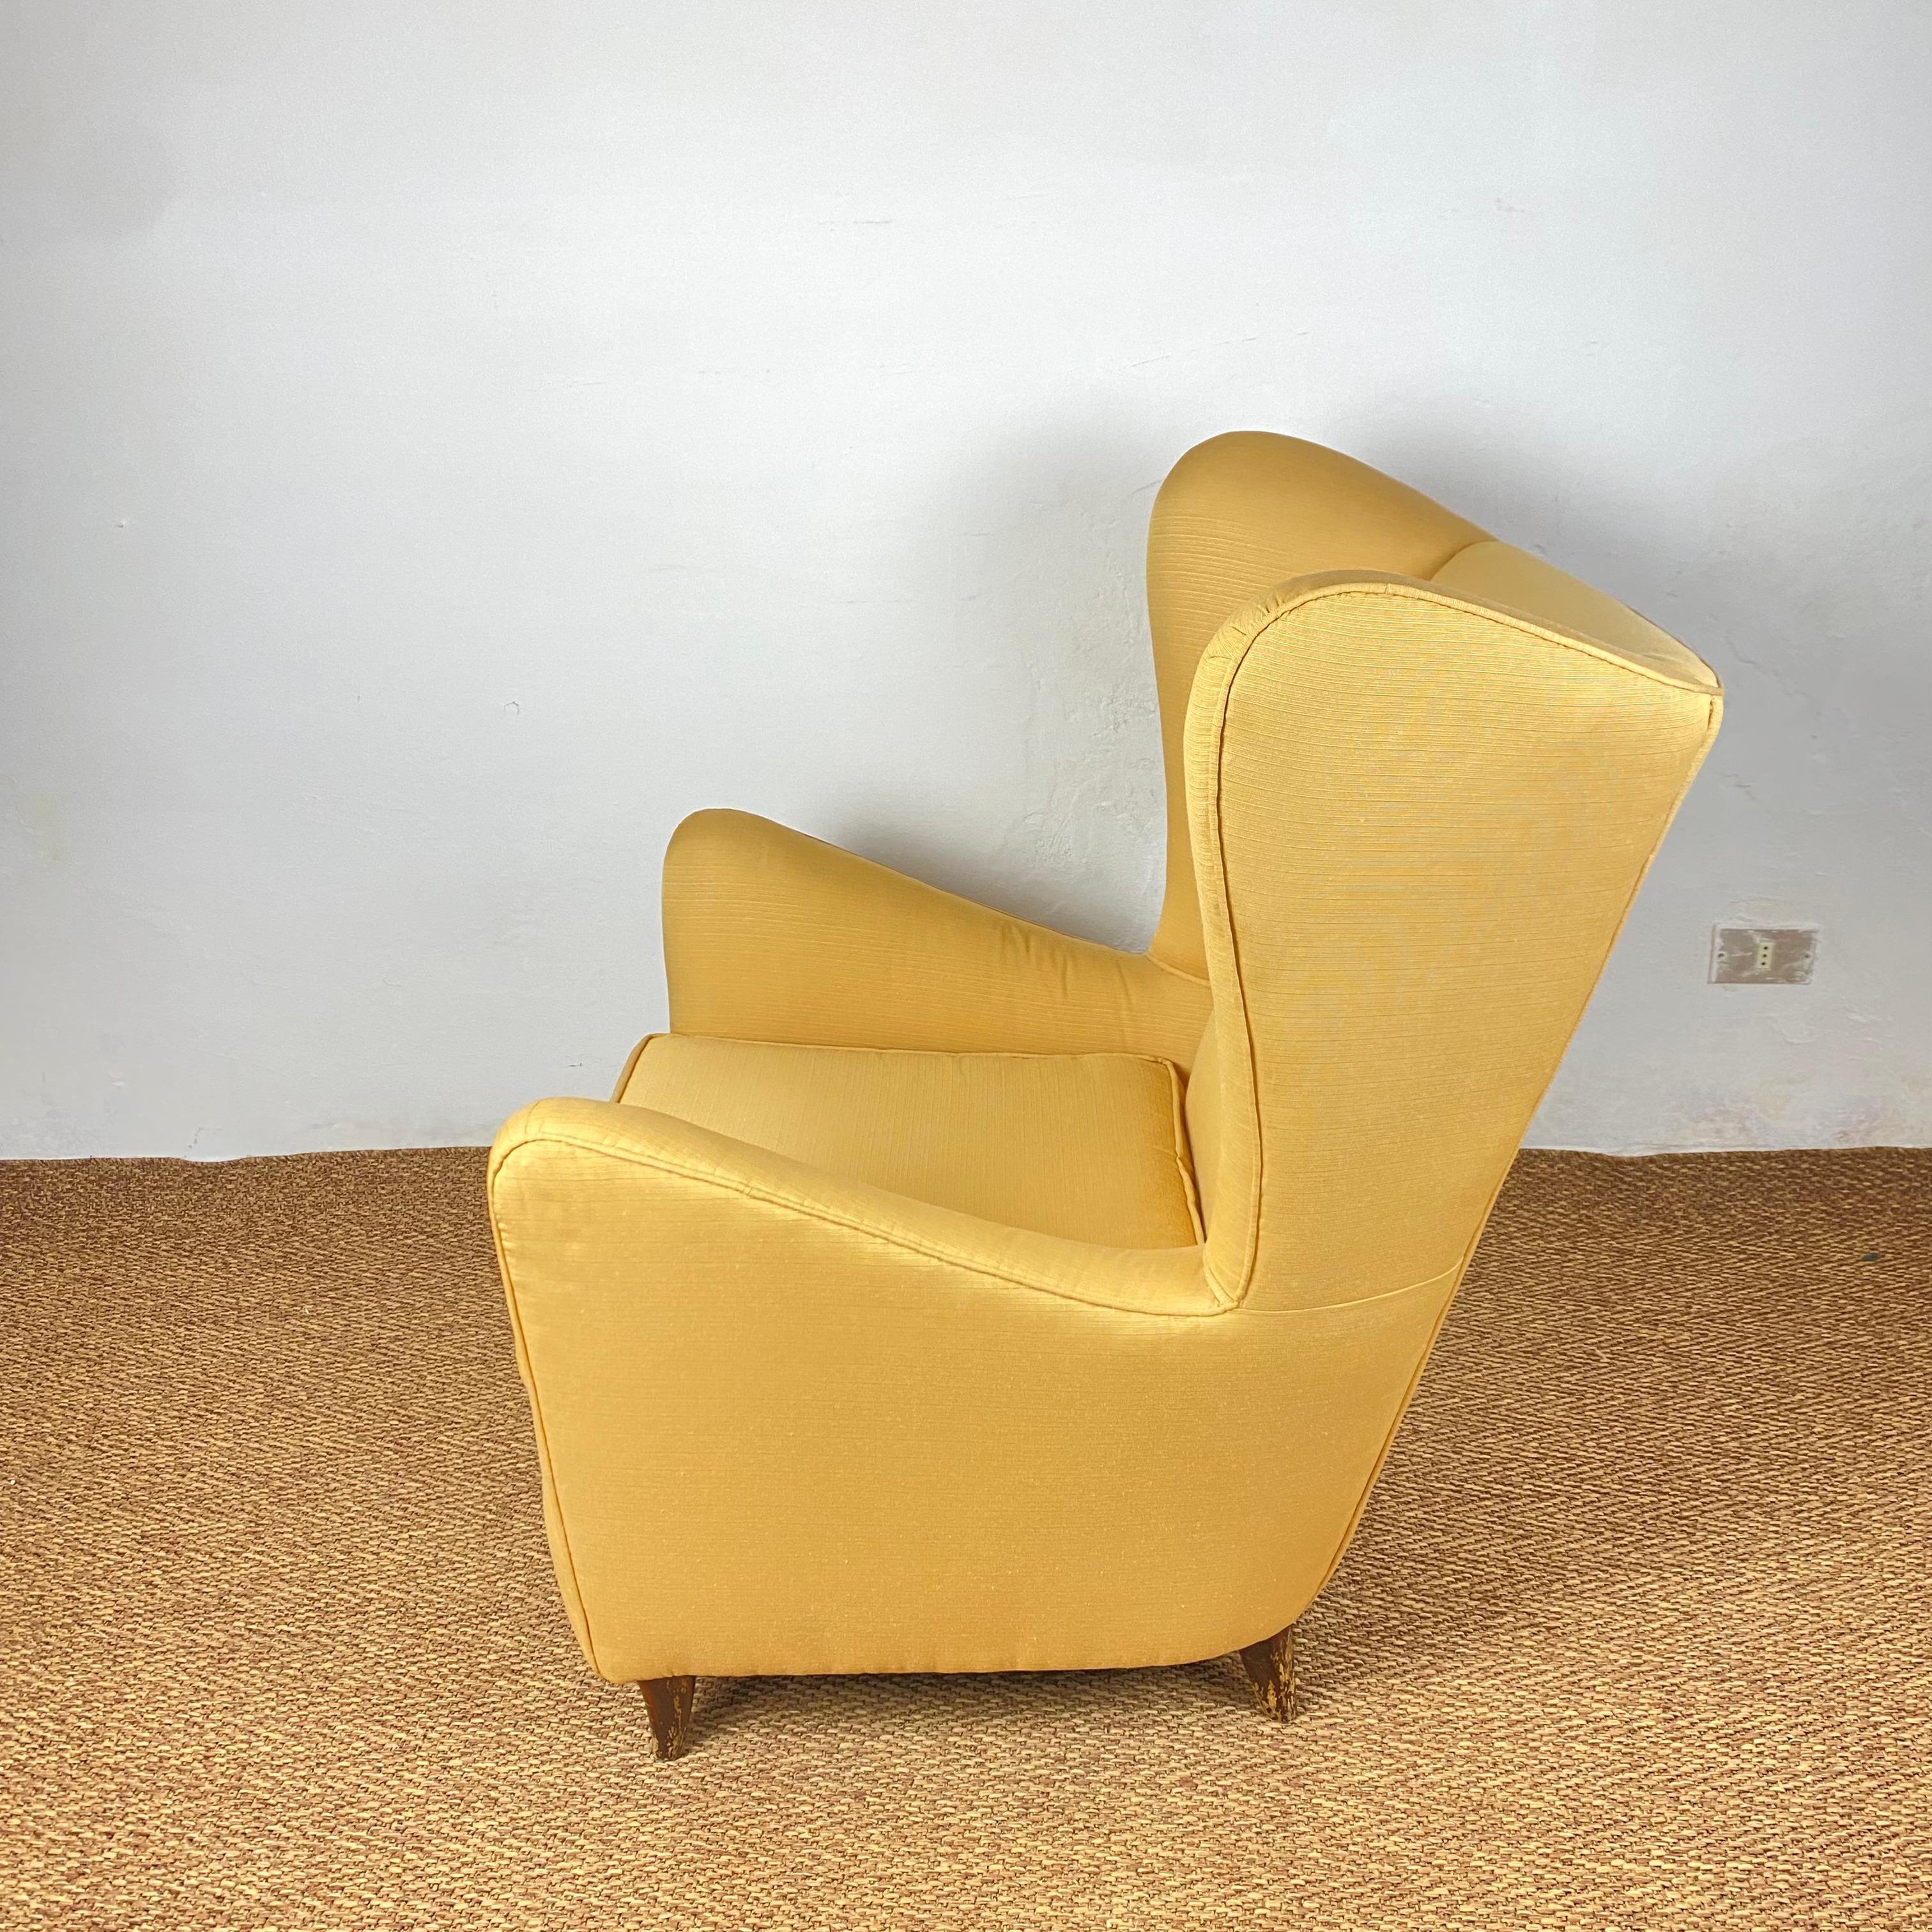 Superbe paire de fauteuils de style Gio Ponti.
Les fauteuils sont en parfait état vintage, finement doublés de soie jaune, les pieds présentent quelques signes de vieillissement mais en parfait état structurel.
 
Dimensions : H96X80X90cm :